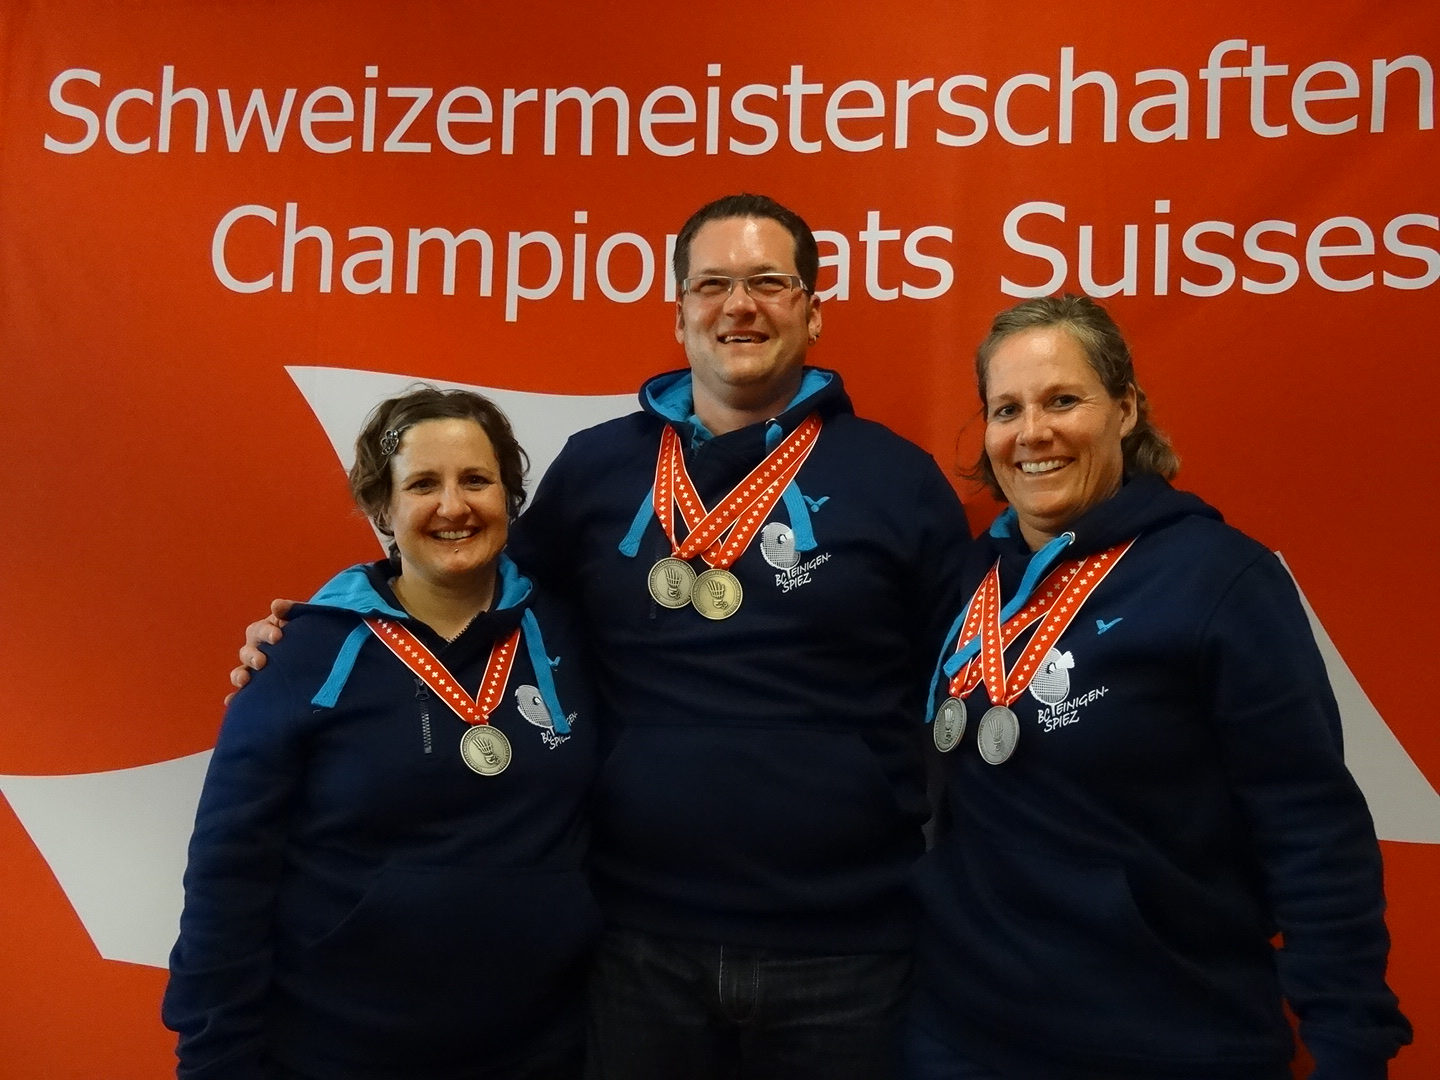 Seniorenschweizermeisterschaft 2017 in Bern